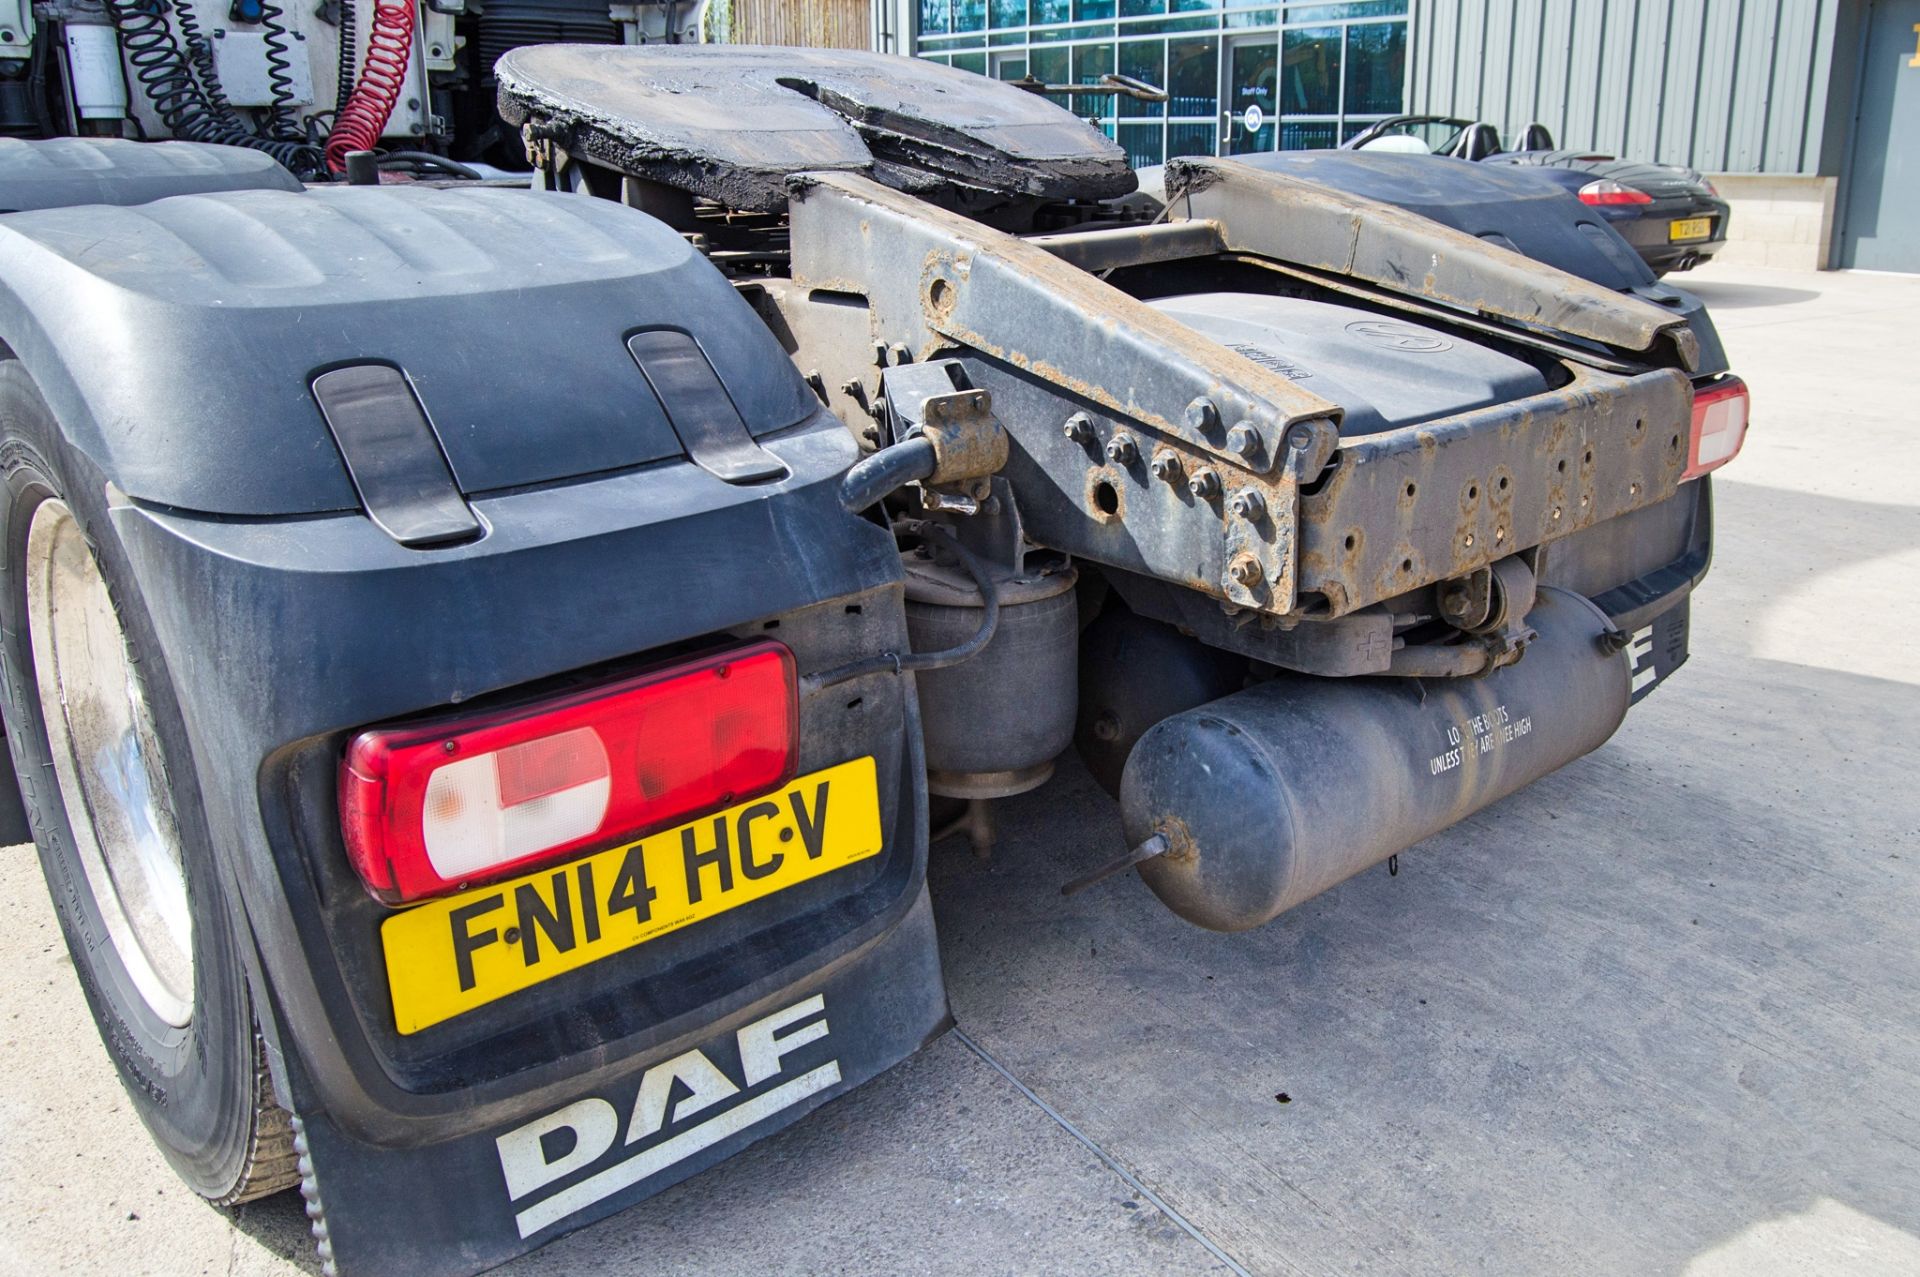 DAF XF 460 Euro 6 6x2 tractor unit Registration Number: FN14 HCV Date of Registration: 02/03/2014 - Image 12 of 33